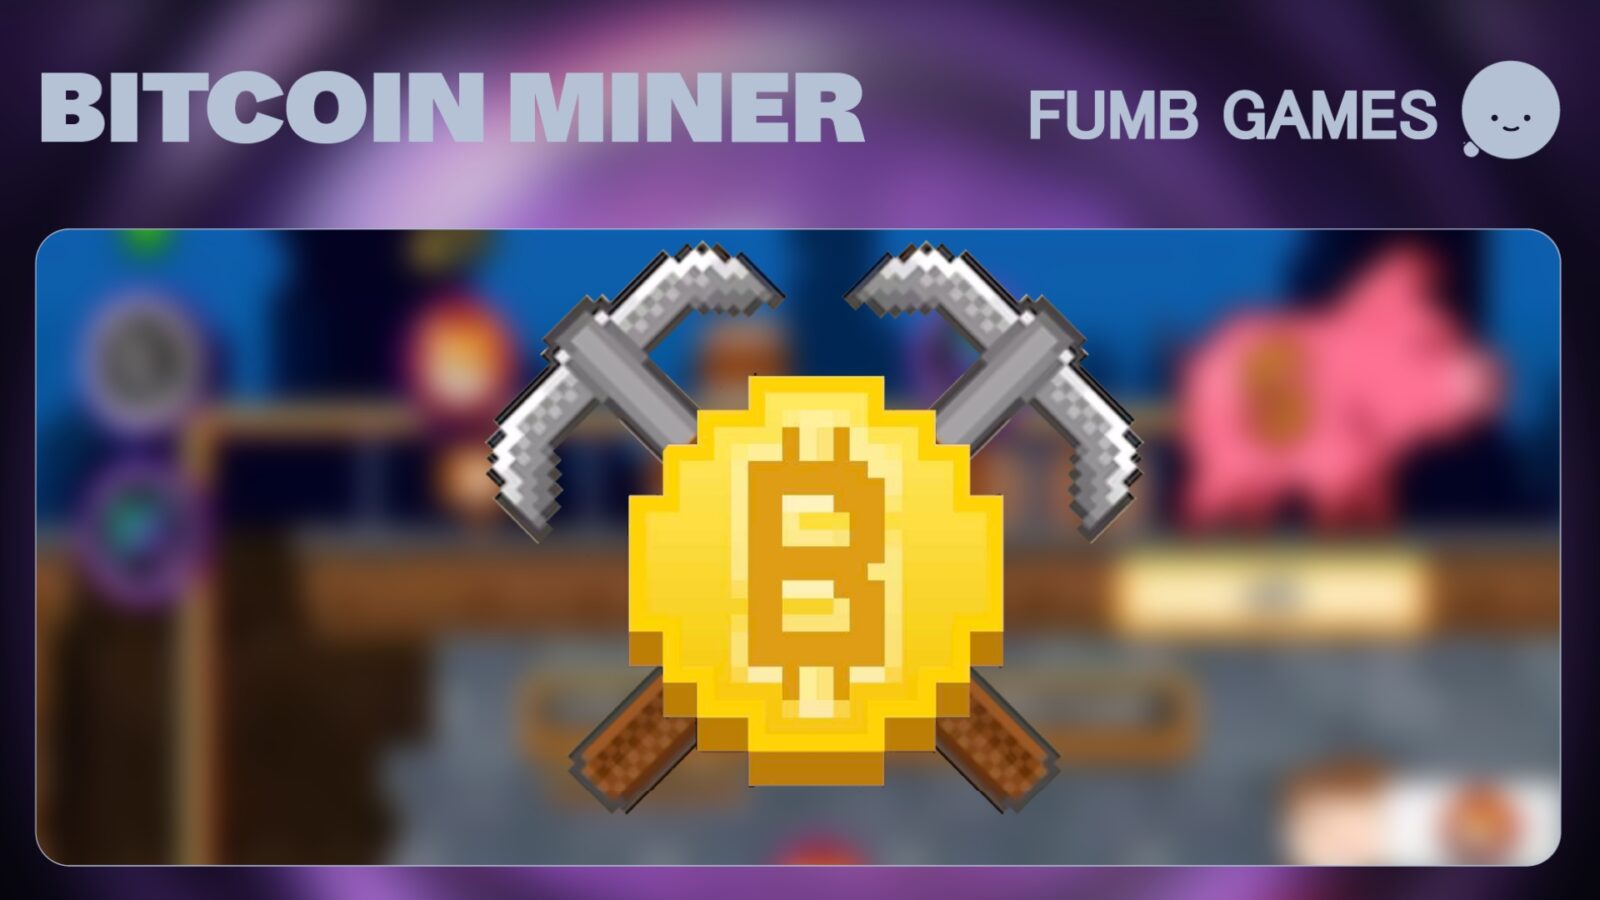 Bitcoin Miner Achieves 2 Million Downloads